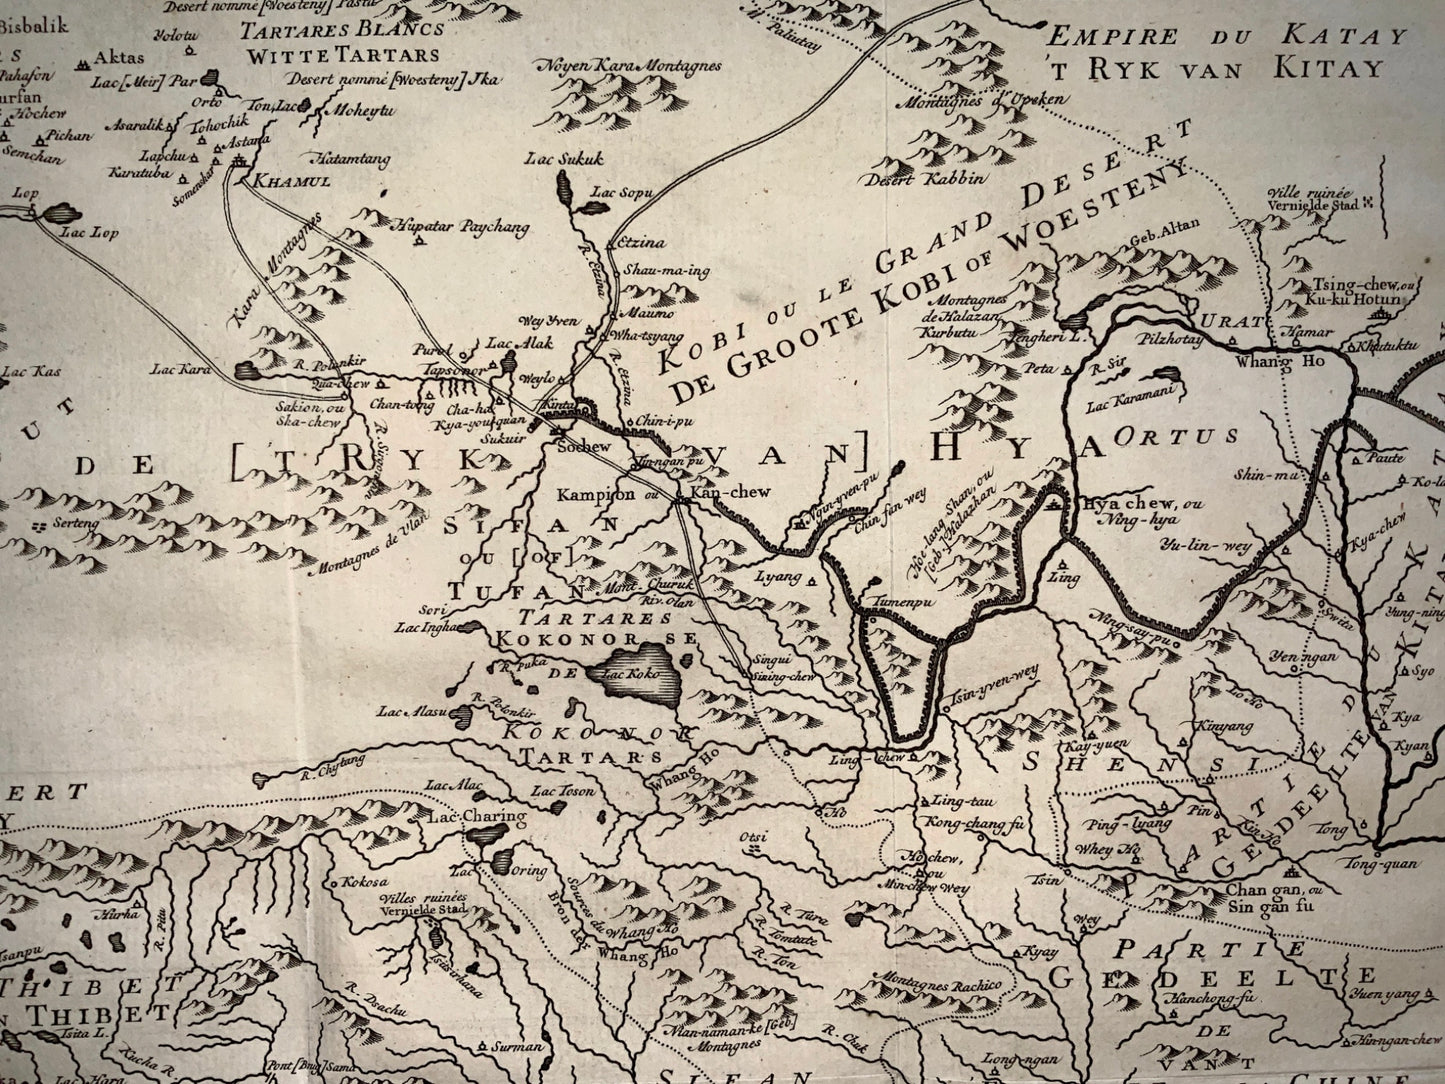 1770 Schley - 'L’Empire de Hya et Partie de Tangut'. Xi Xia. China. - Fine - Map - Travel